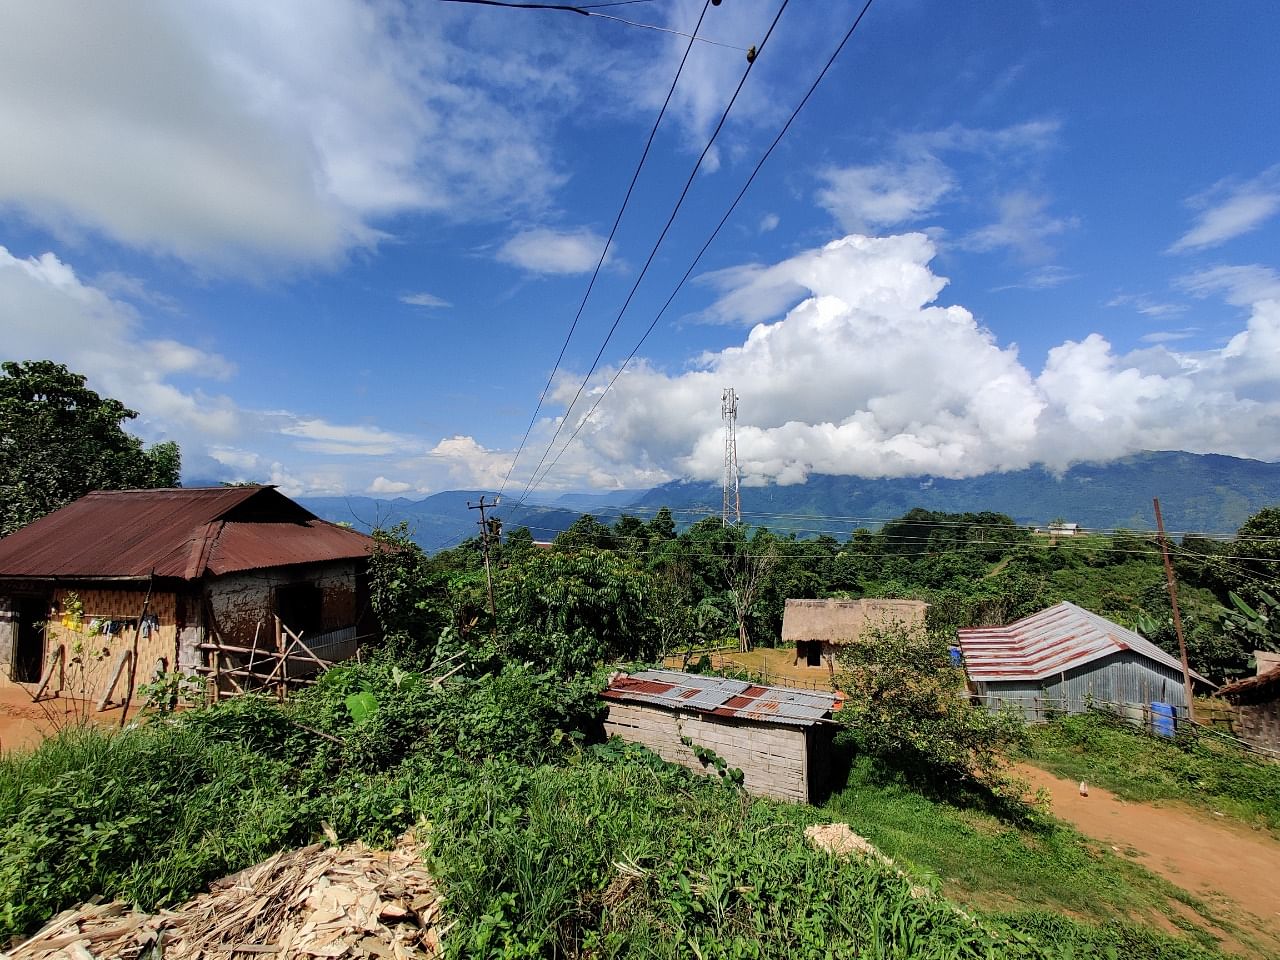 Phellong village | Simrin Sirur | ThePrint